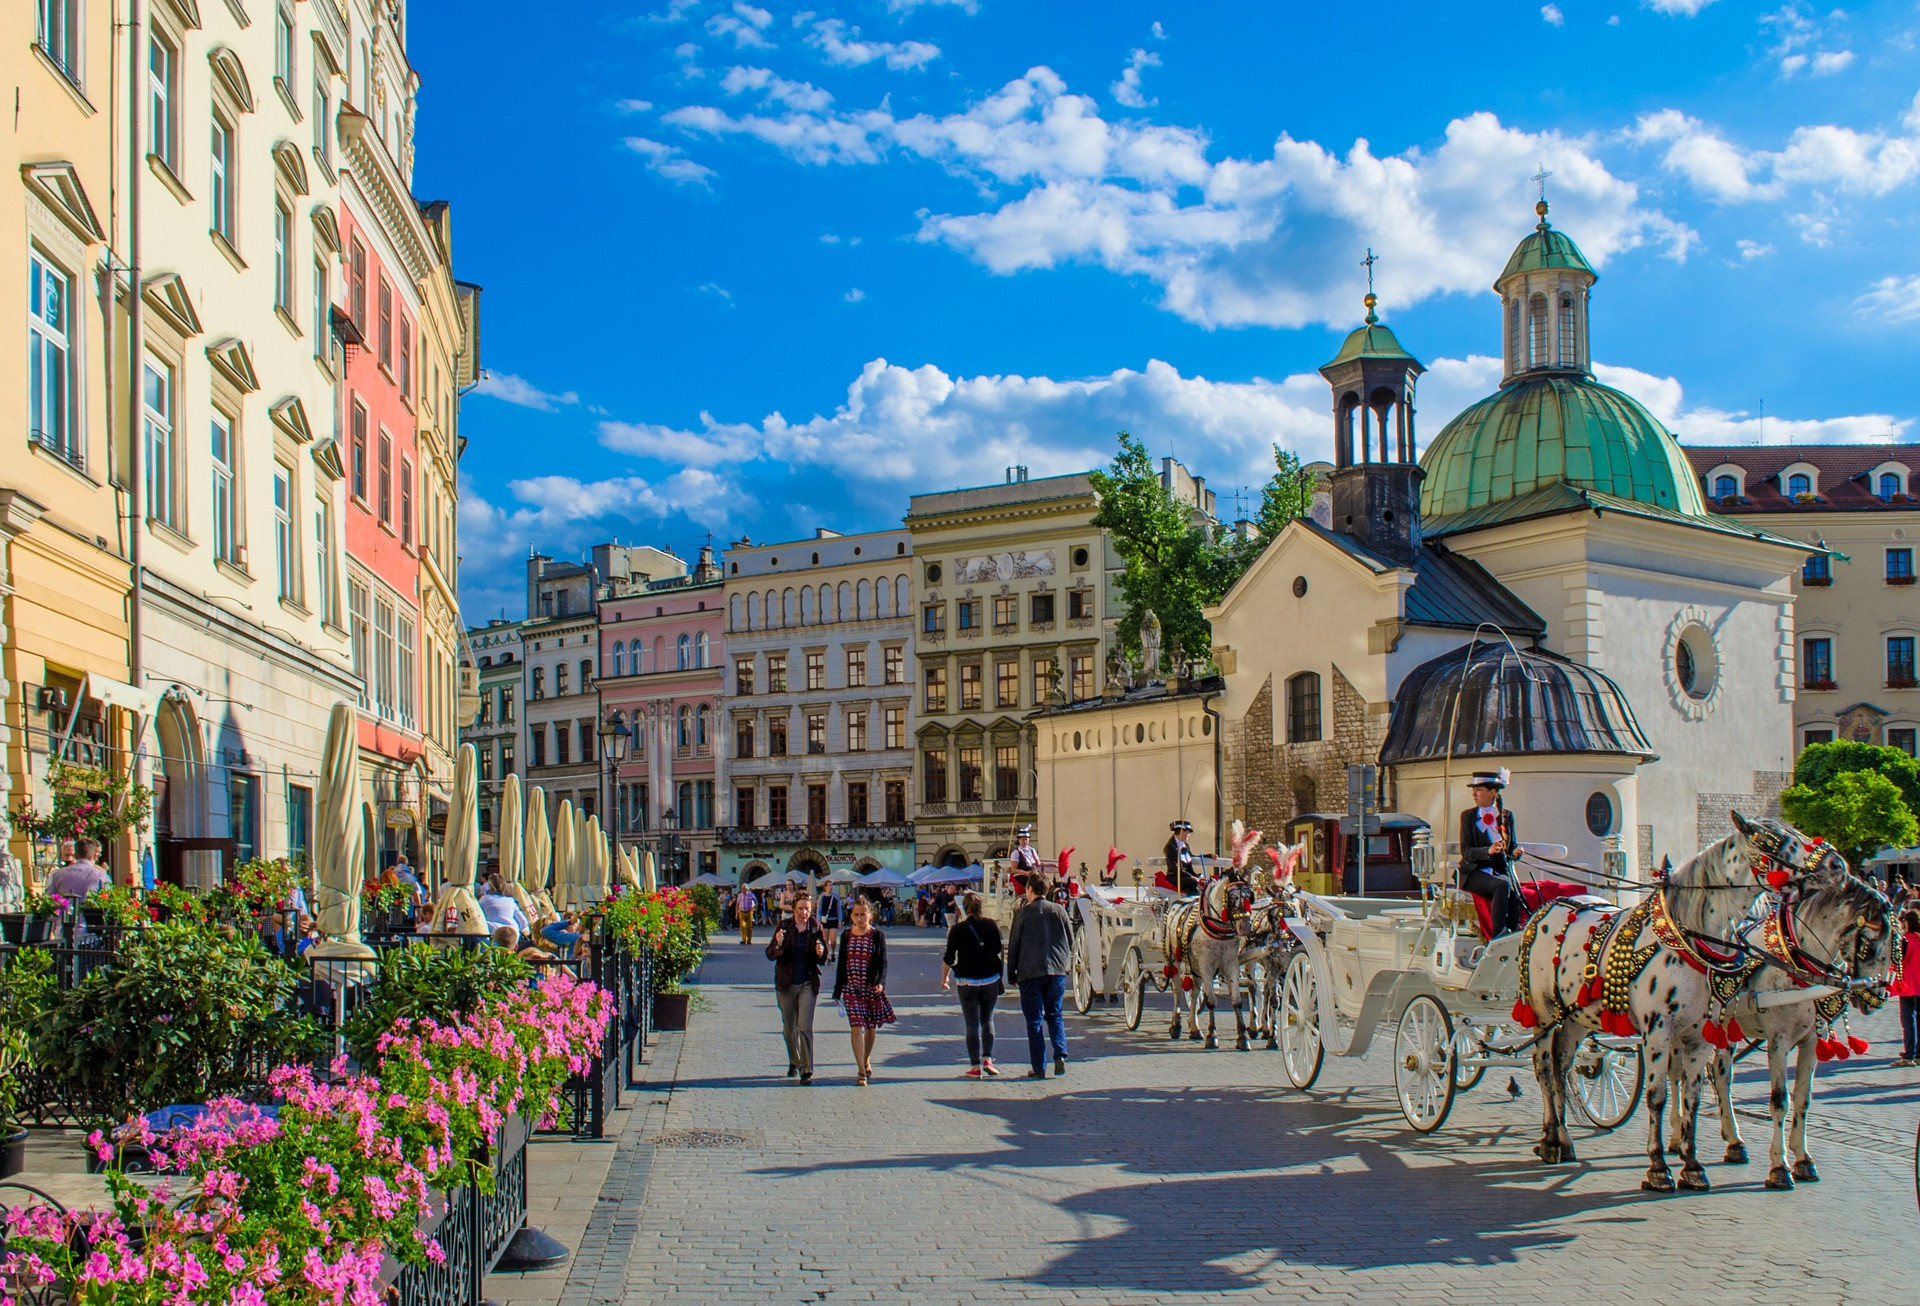 Druhé najväčšie mesto Poľska patrí medzi cenovo najdostupnejšie miesta, ktoré je ako ideálne na víkendový únik. Je známe svojou bohatou architektúrou a kultúrou. Počas jeho prehliadky sa nezabudnite sa pozrieť na najstaršiu budovu univerzity v Poľsku, Wawelskú katedrálu či Wawelský kráľovský zámok.  Navštívte tiež originálne múzeum Czartoryskich, najväčšie stredoveké trhovisko či krasovú jaskyňu Dračiu jamu. 

Cena ubytovania na noc pre dvoch: 26 eur

Cena jedla v stredne drahej reštaurácii pred dvoch: 23,54 eura

Cena piva: 1,65 eura

Jednosmerný lístok v MHD: 89 centov